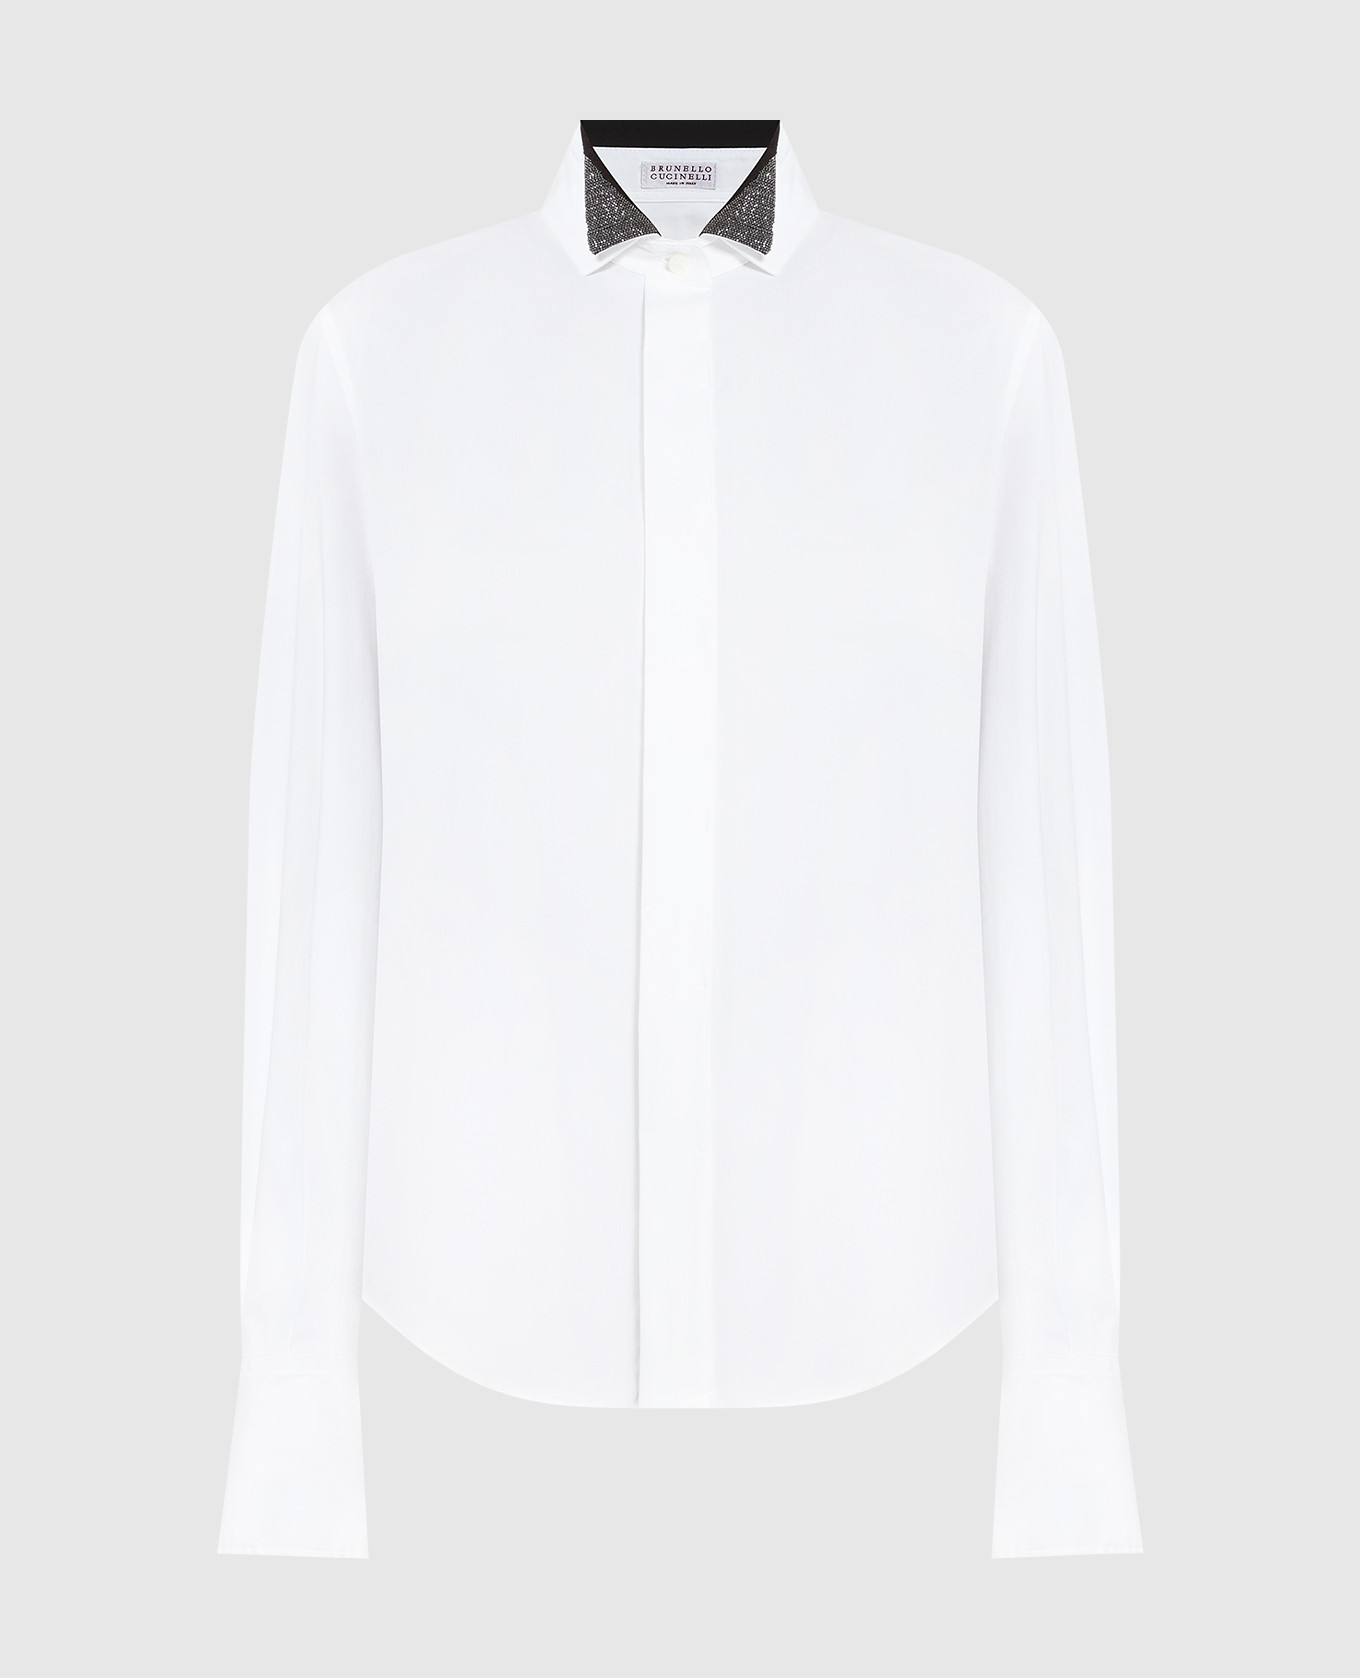 Camisa blanca con cadena de monil.